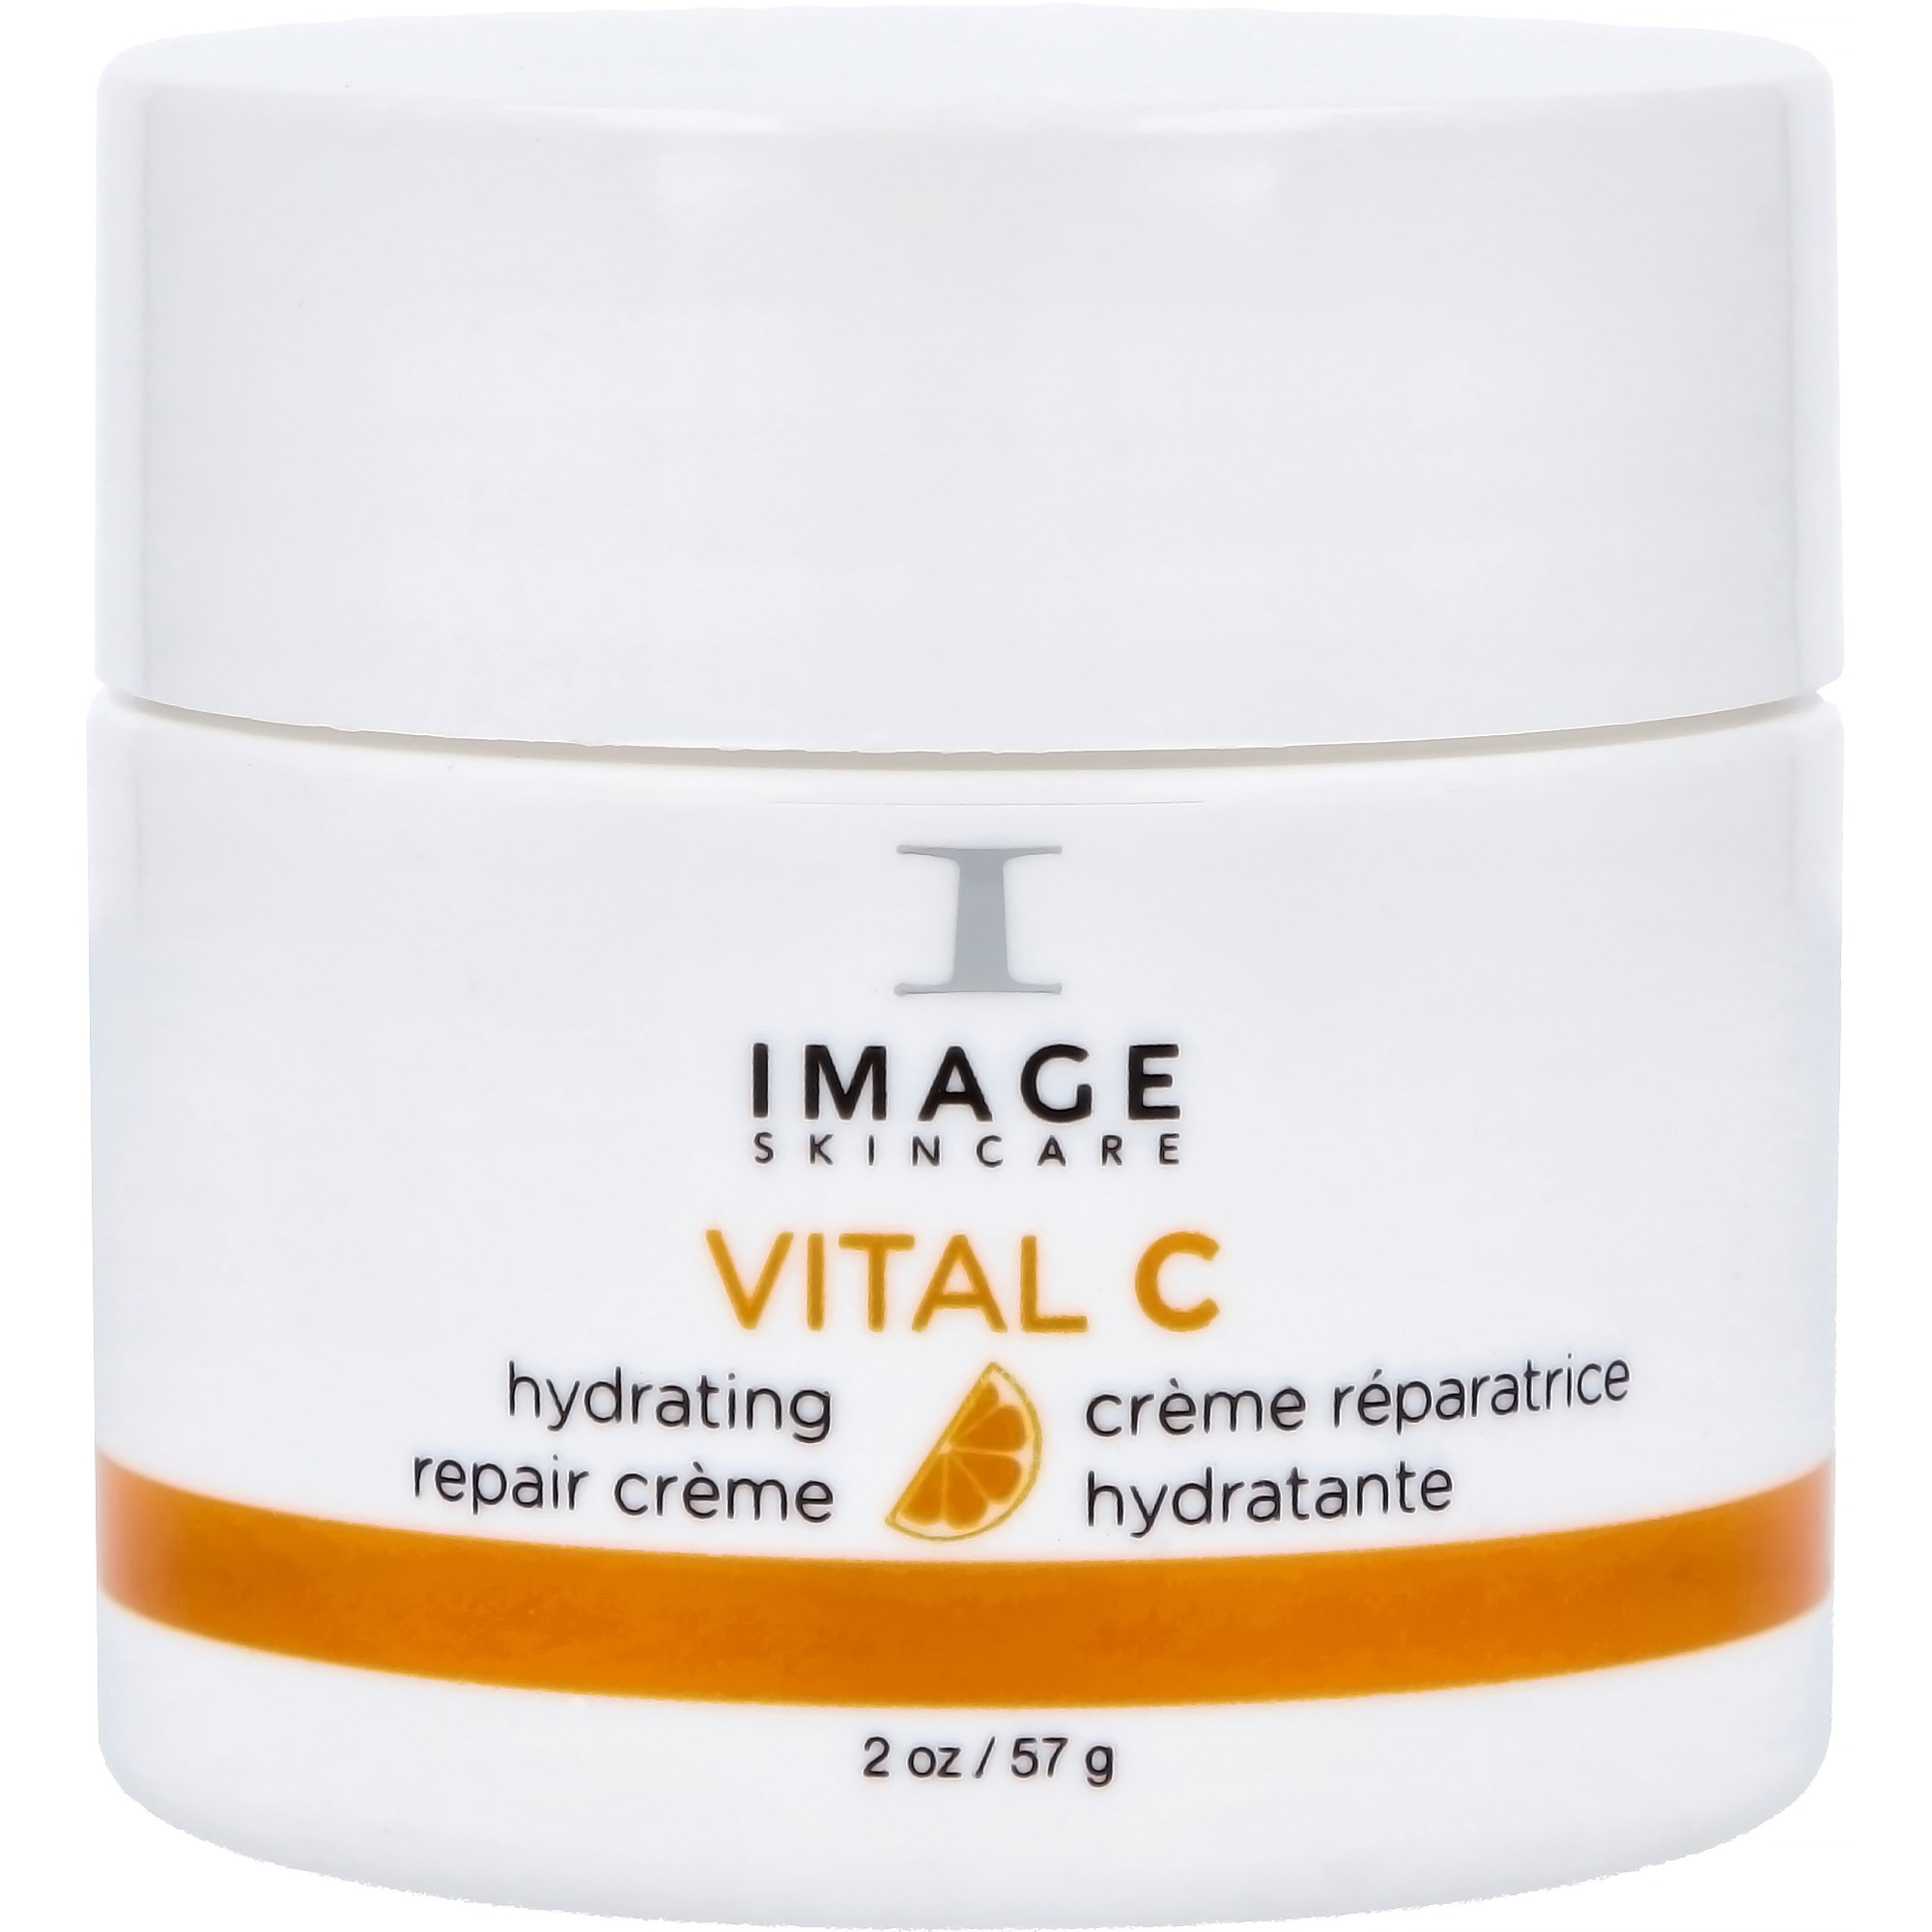 IMAGE Skincare Vital C Hydrating Repair Cremé 57 g